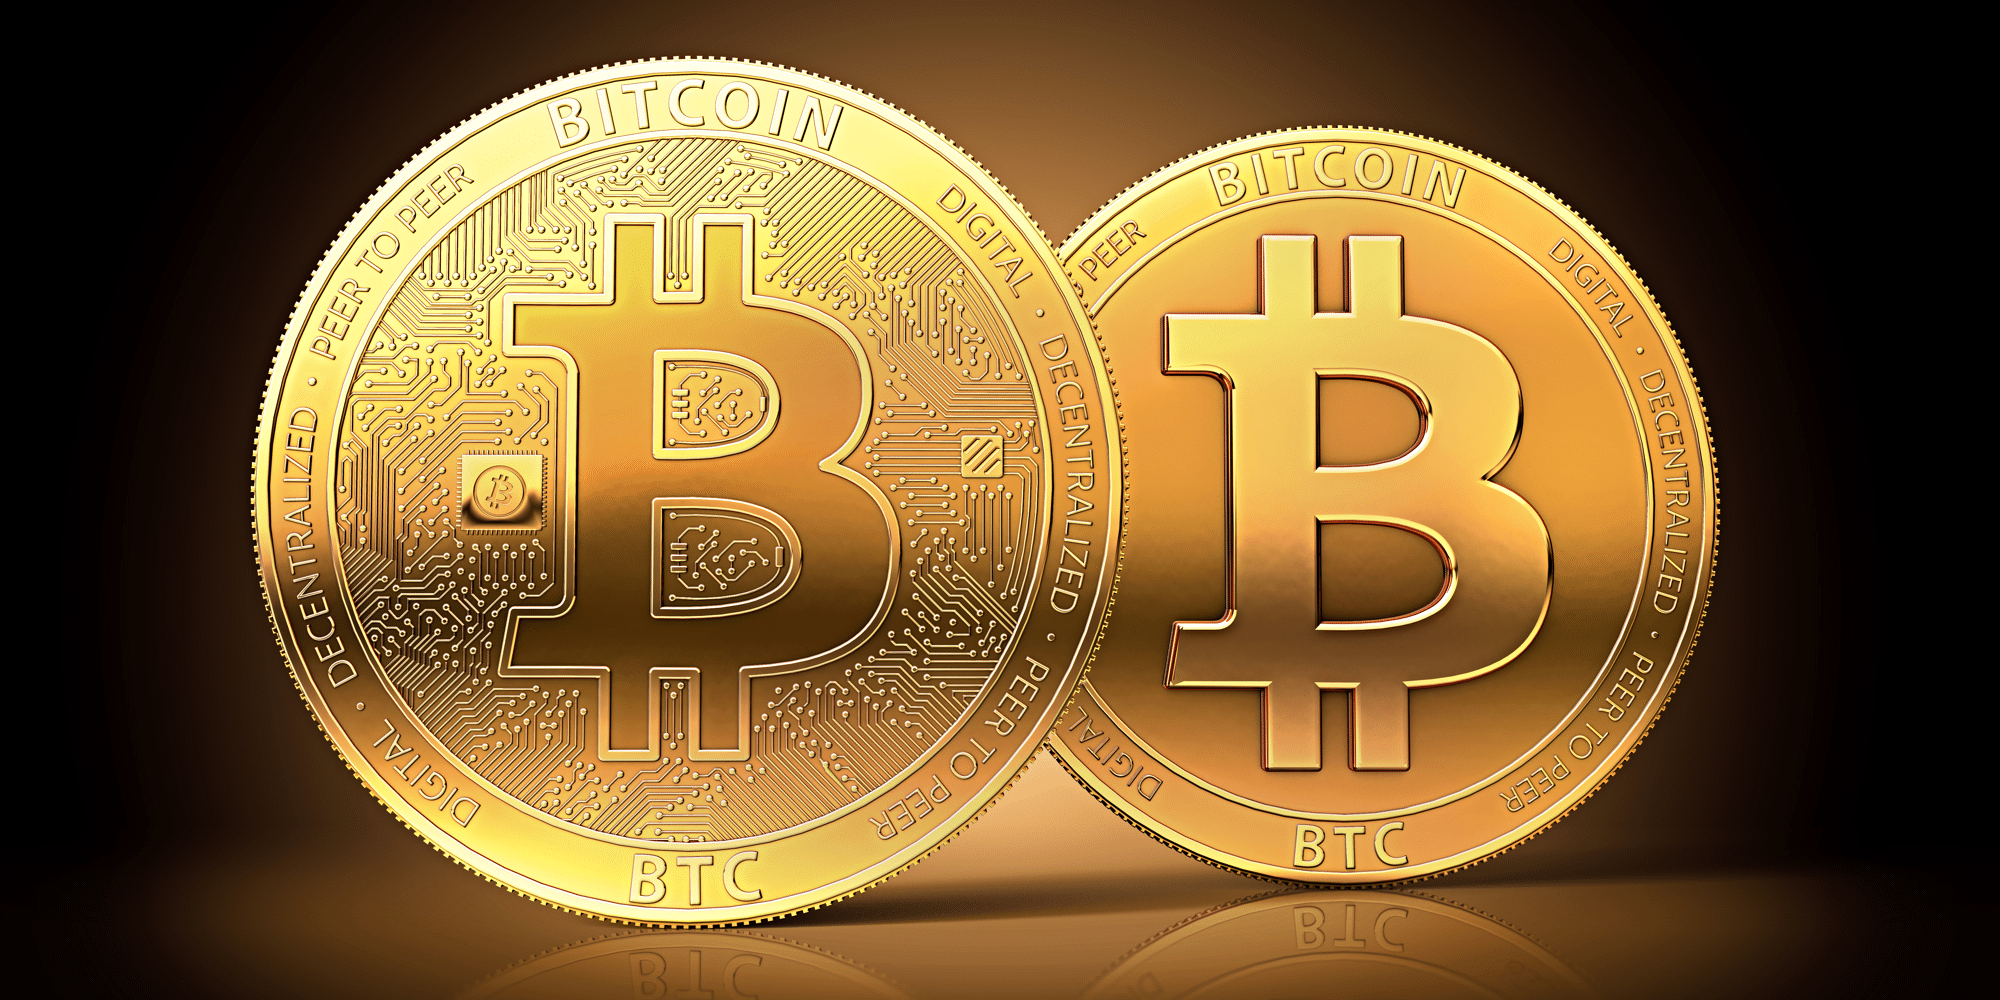 Get new bitcoin fork перевод с английского как торговать биткоин qiwi